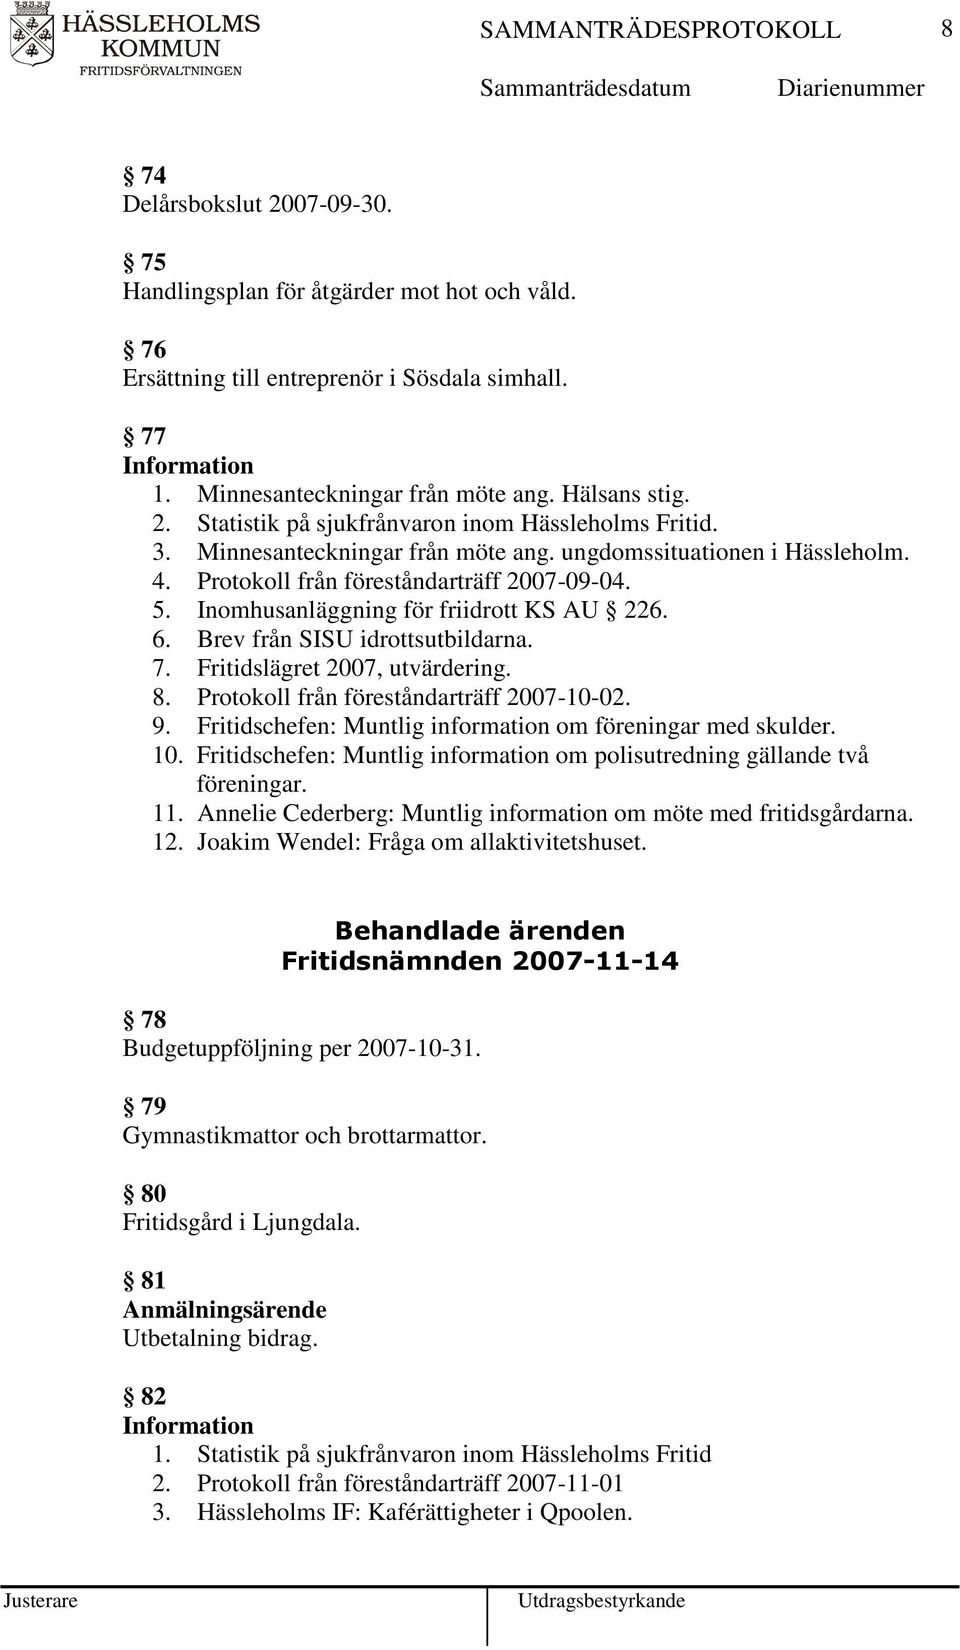 7. Fritidslägret 2007, utvärdering. 8. Protokoll från föreståndarträff 2007-10-02. 9. Fritidschefen: Muntlig information om föreningar med skulder. 10.